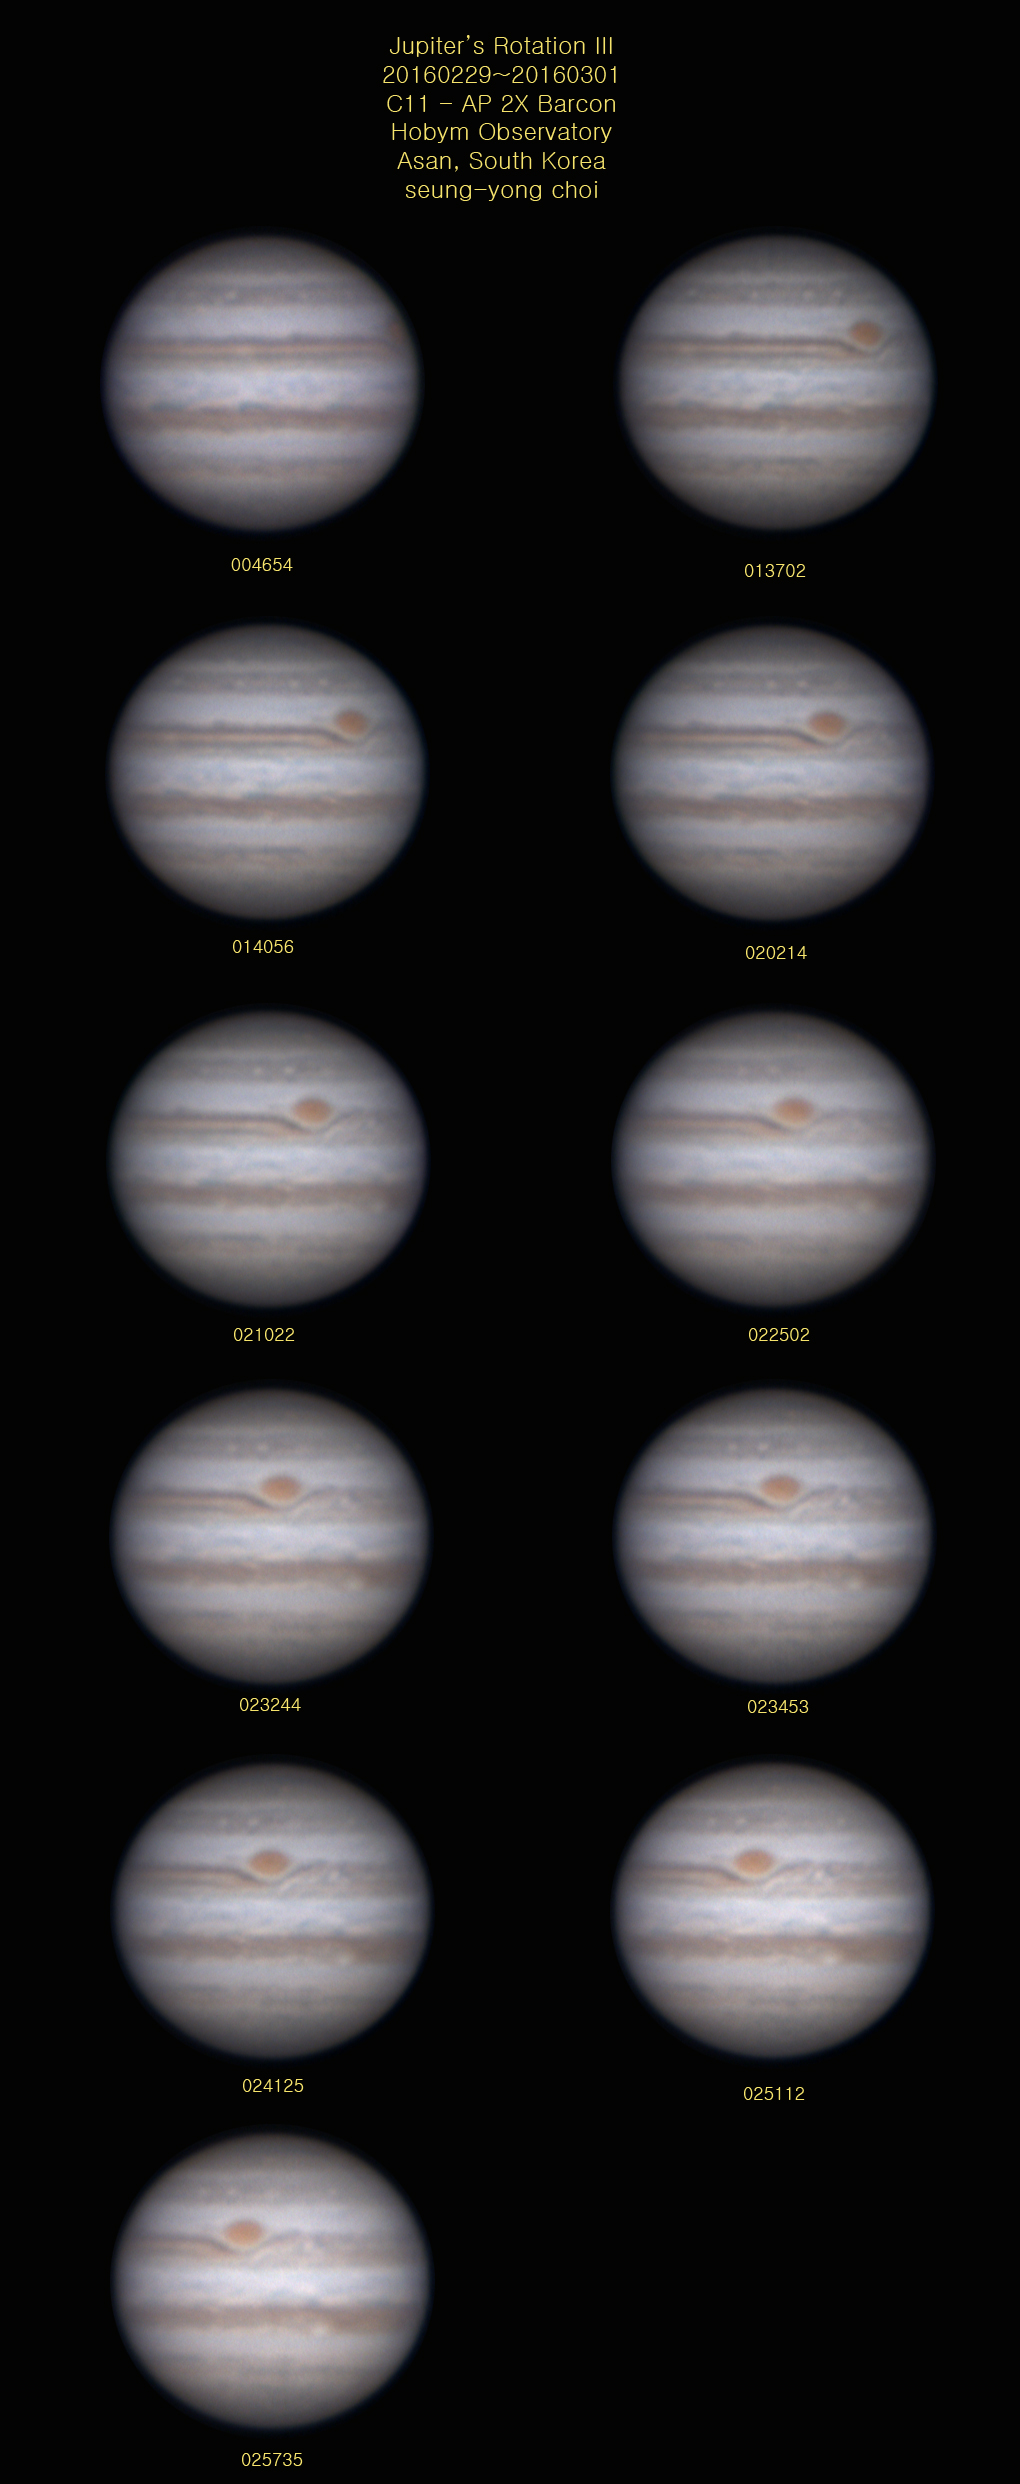 20160229_Jupiter's Rotation III copy.jpg